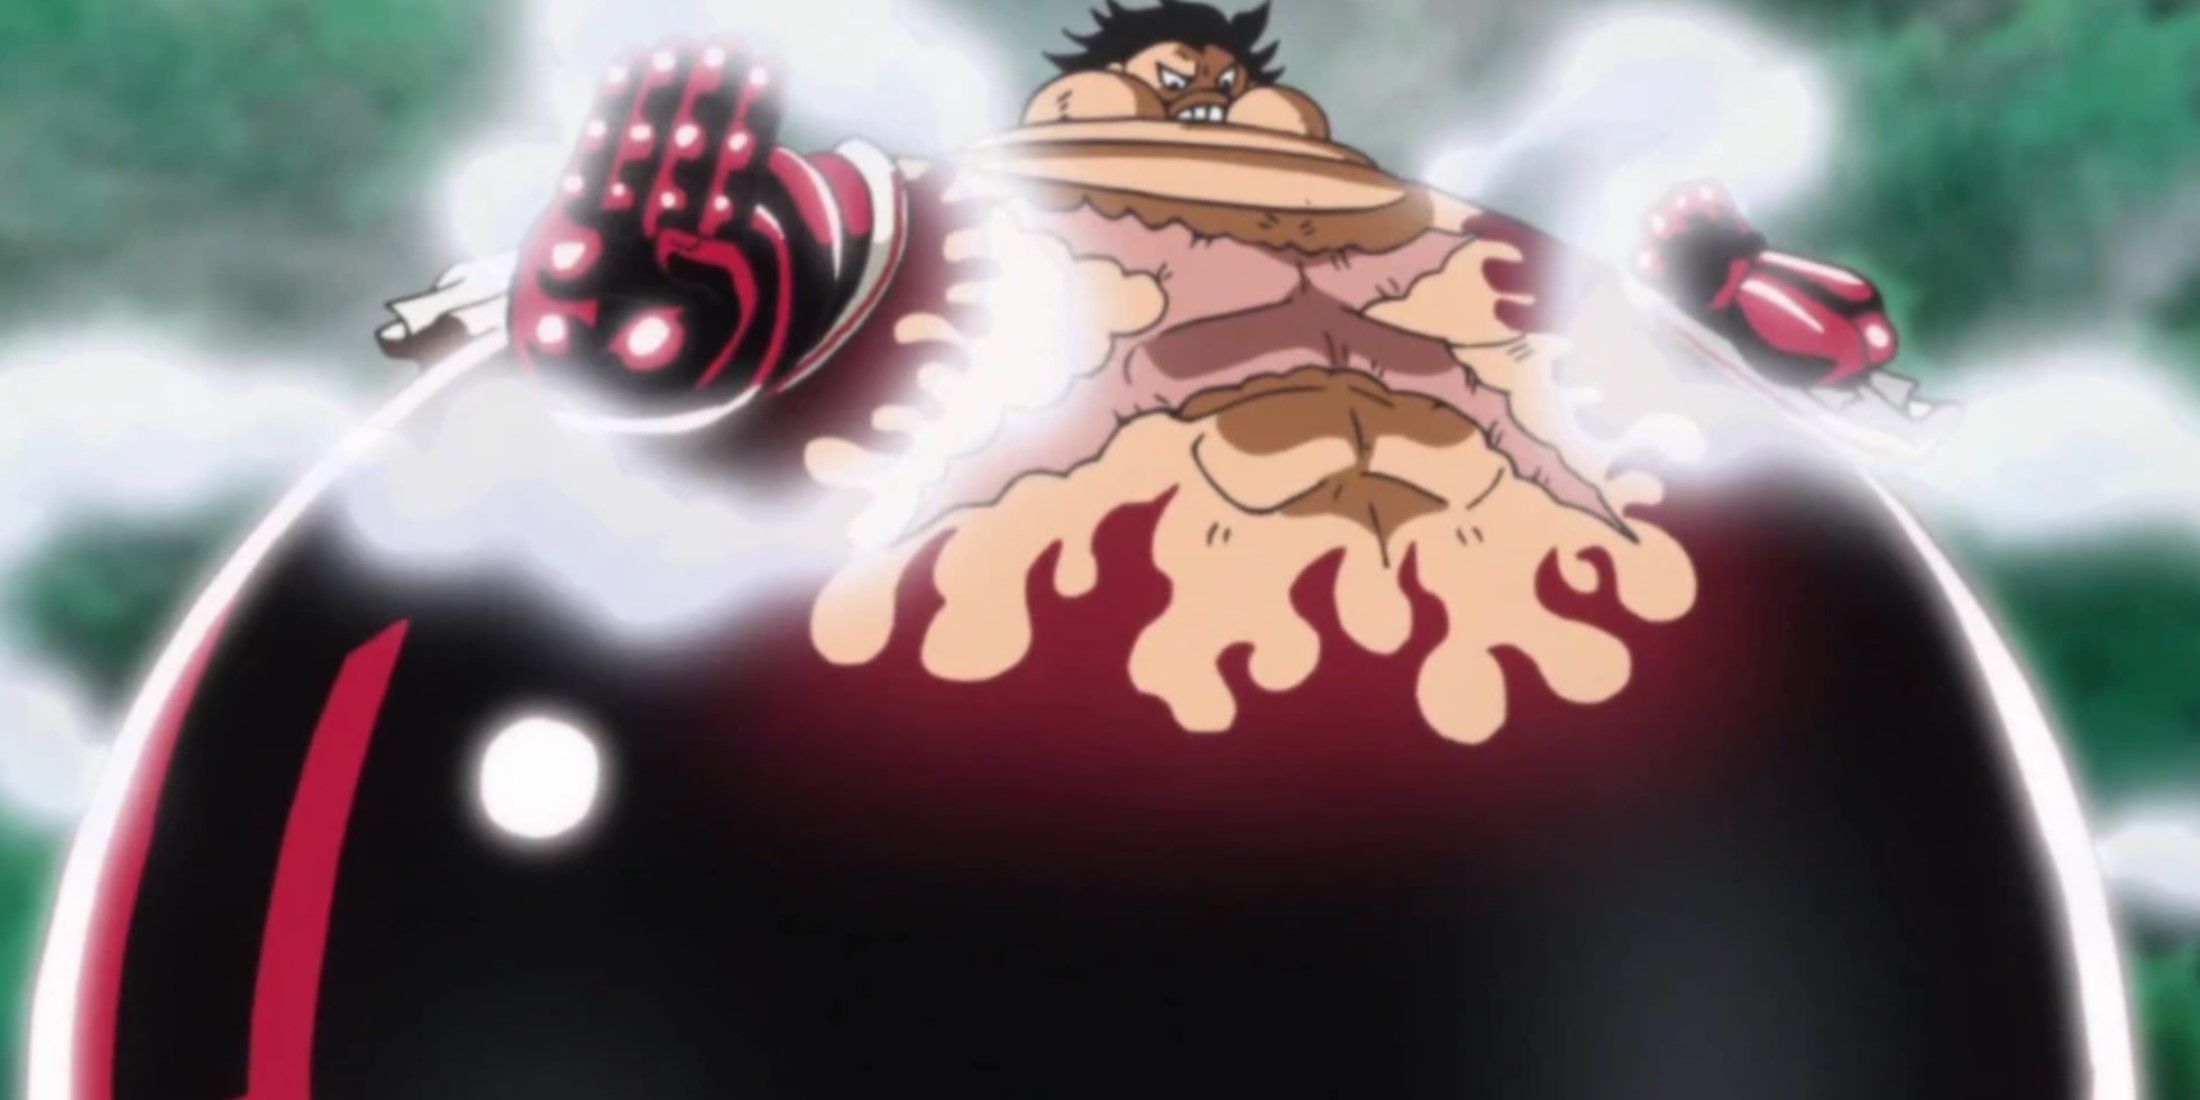 One Piece Gear 4 Luffy Tankman